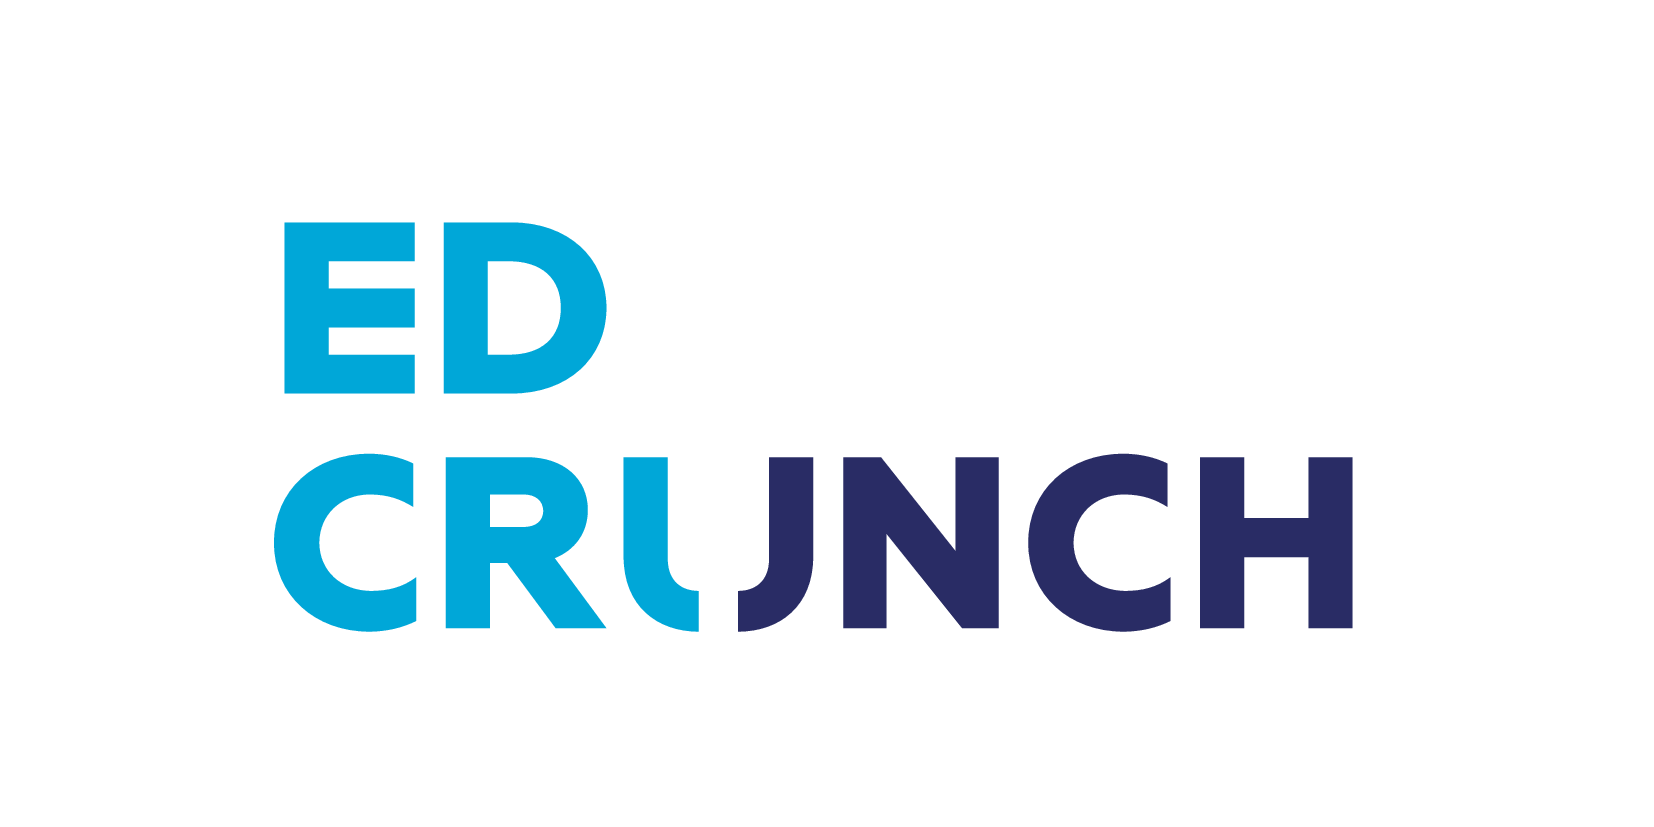 Логотип EdCrunch